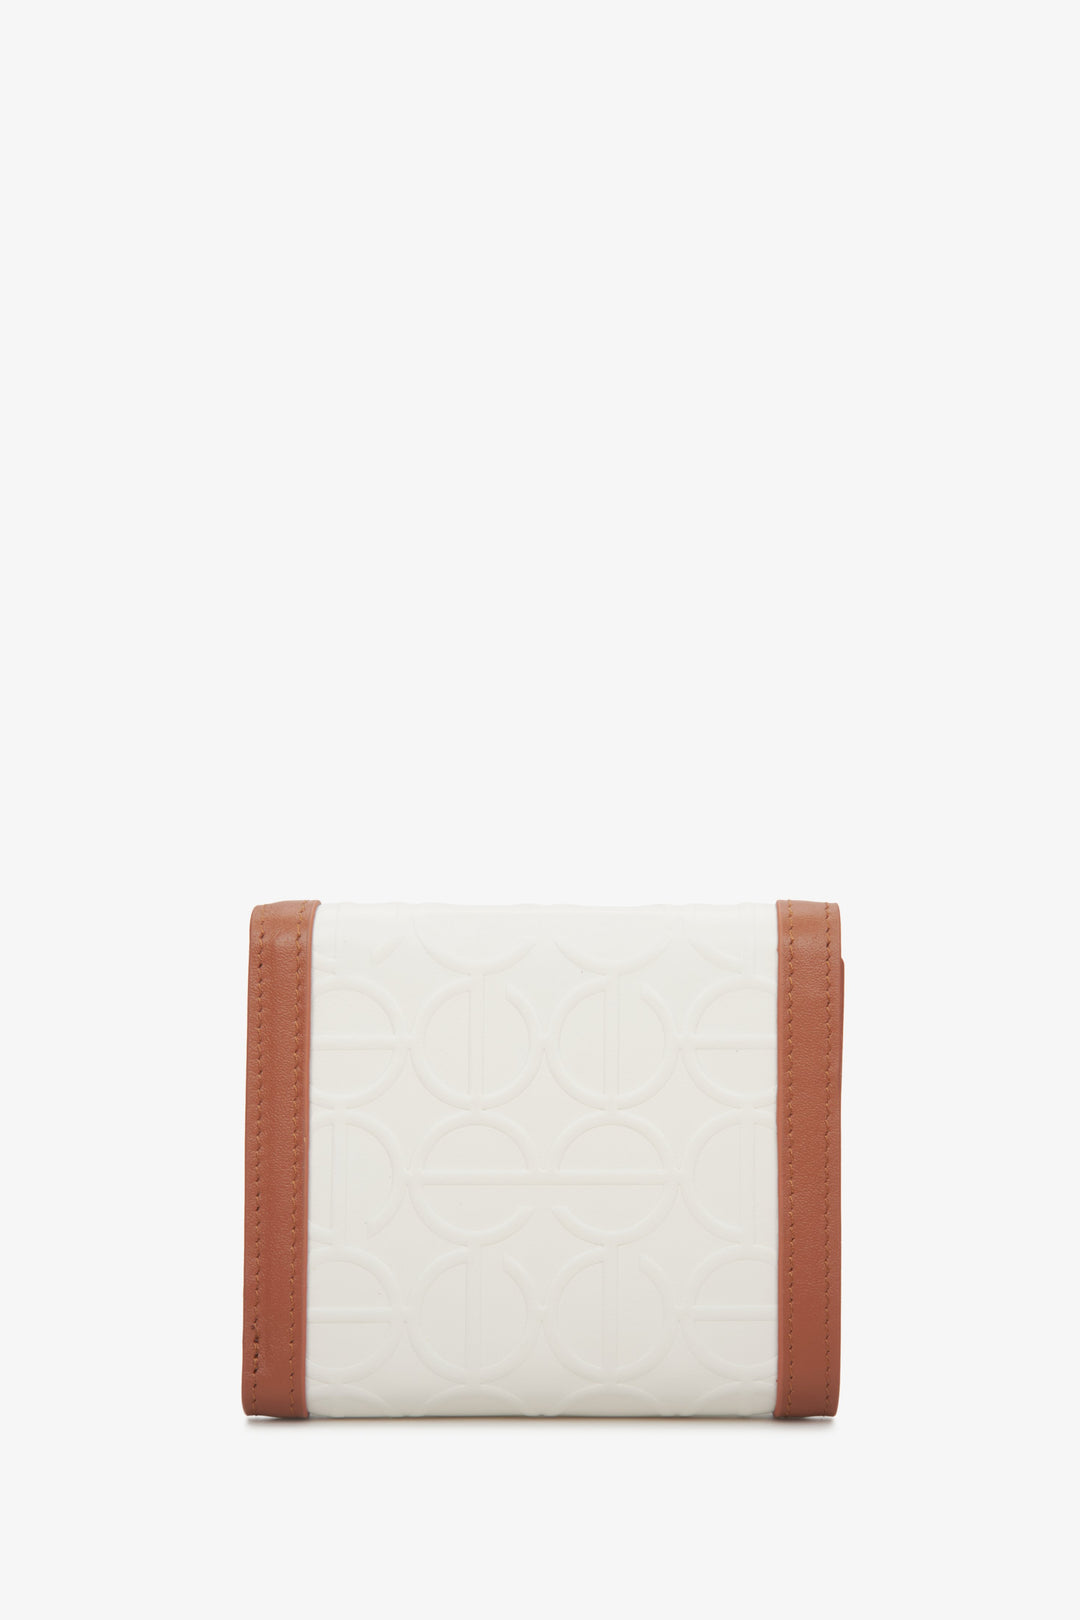 Handy beige-brown Estro women's wallet - back side of the model.